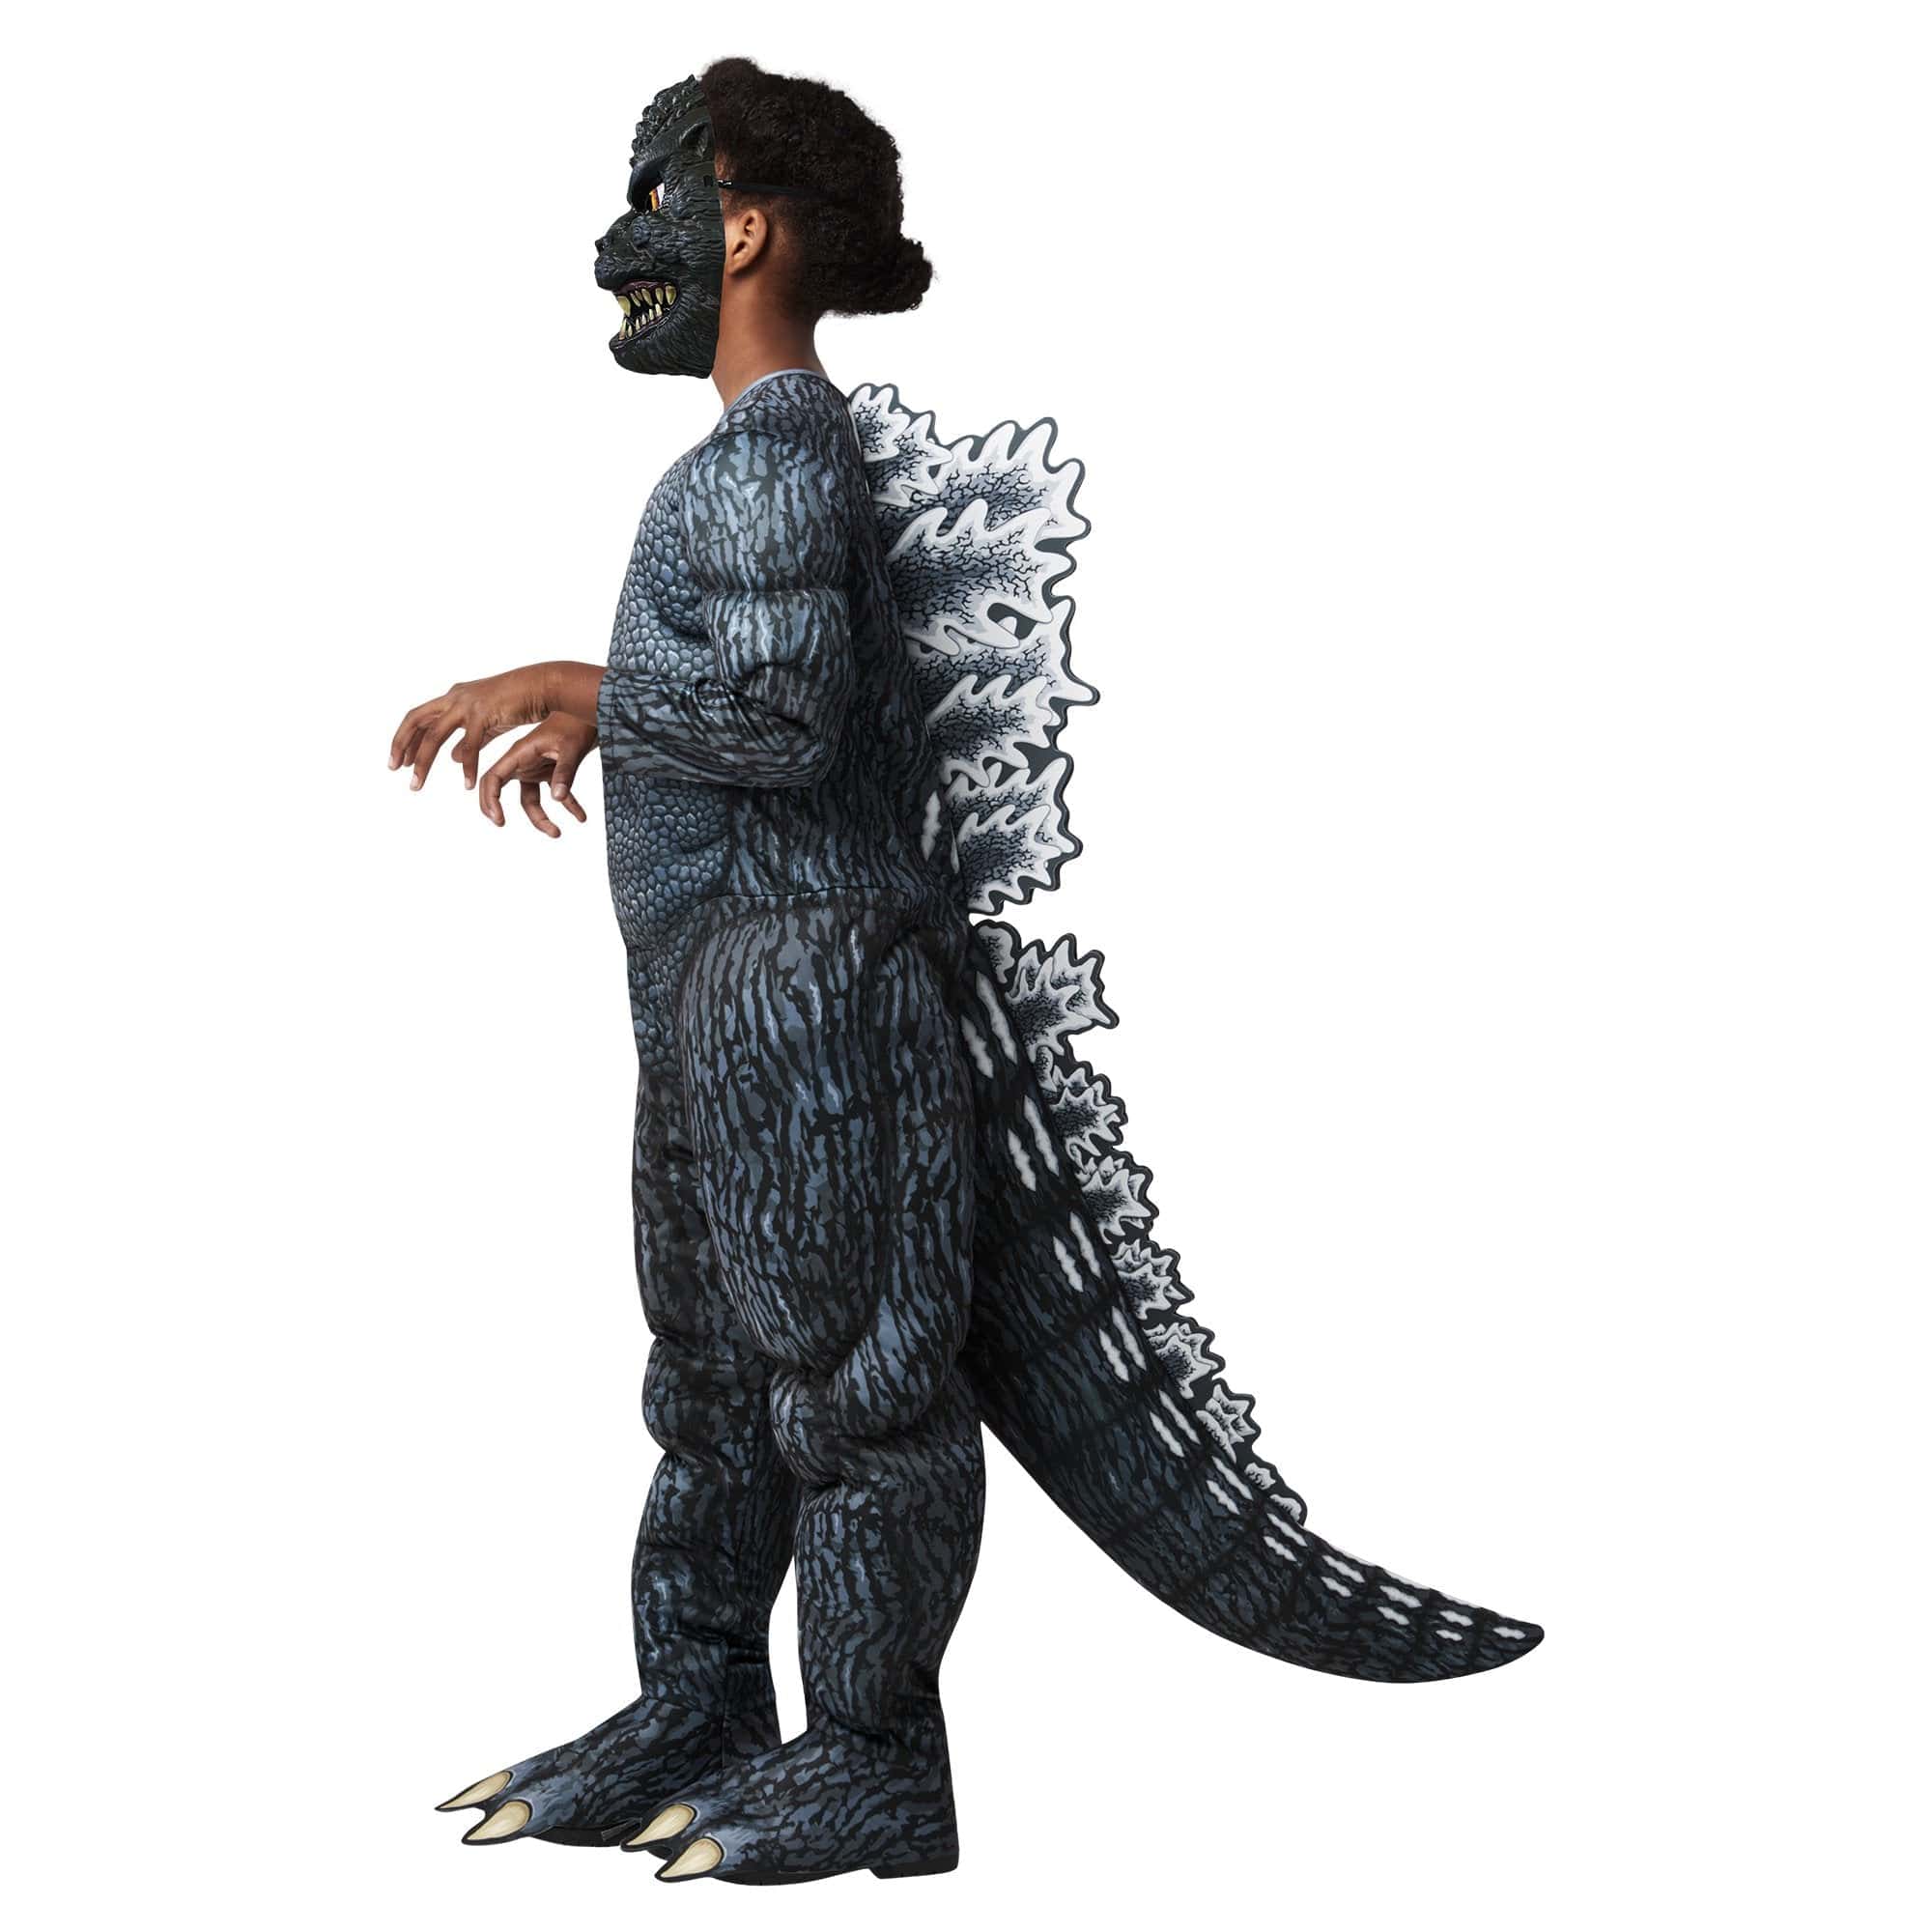 Godzilla Costume